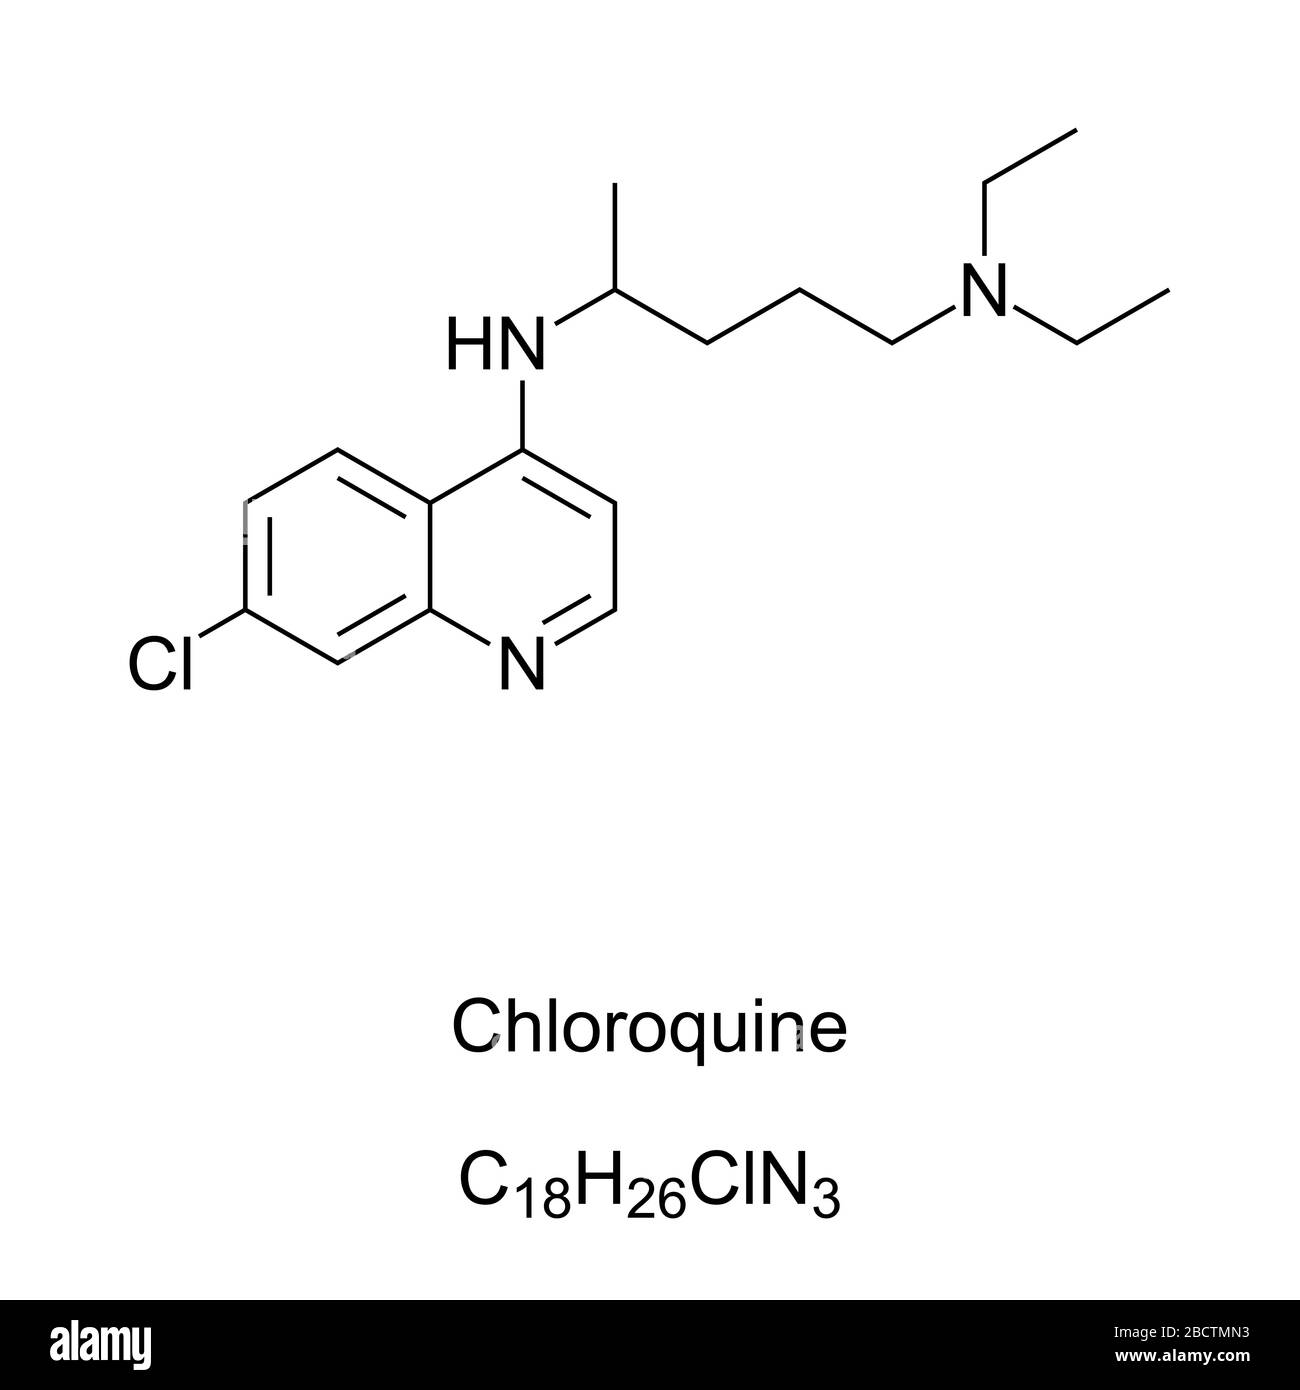 Chloroquinskelettformel und Molekularstruktur. Medikamente werden hauptsächlich zur Vorbeugung und Behandlung von Malaria verwendet. Wird auch zur Behandlung von COVID-19 untersucht. Stockfoto